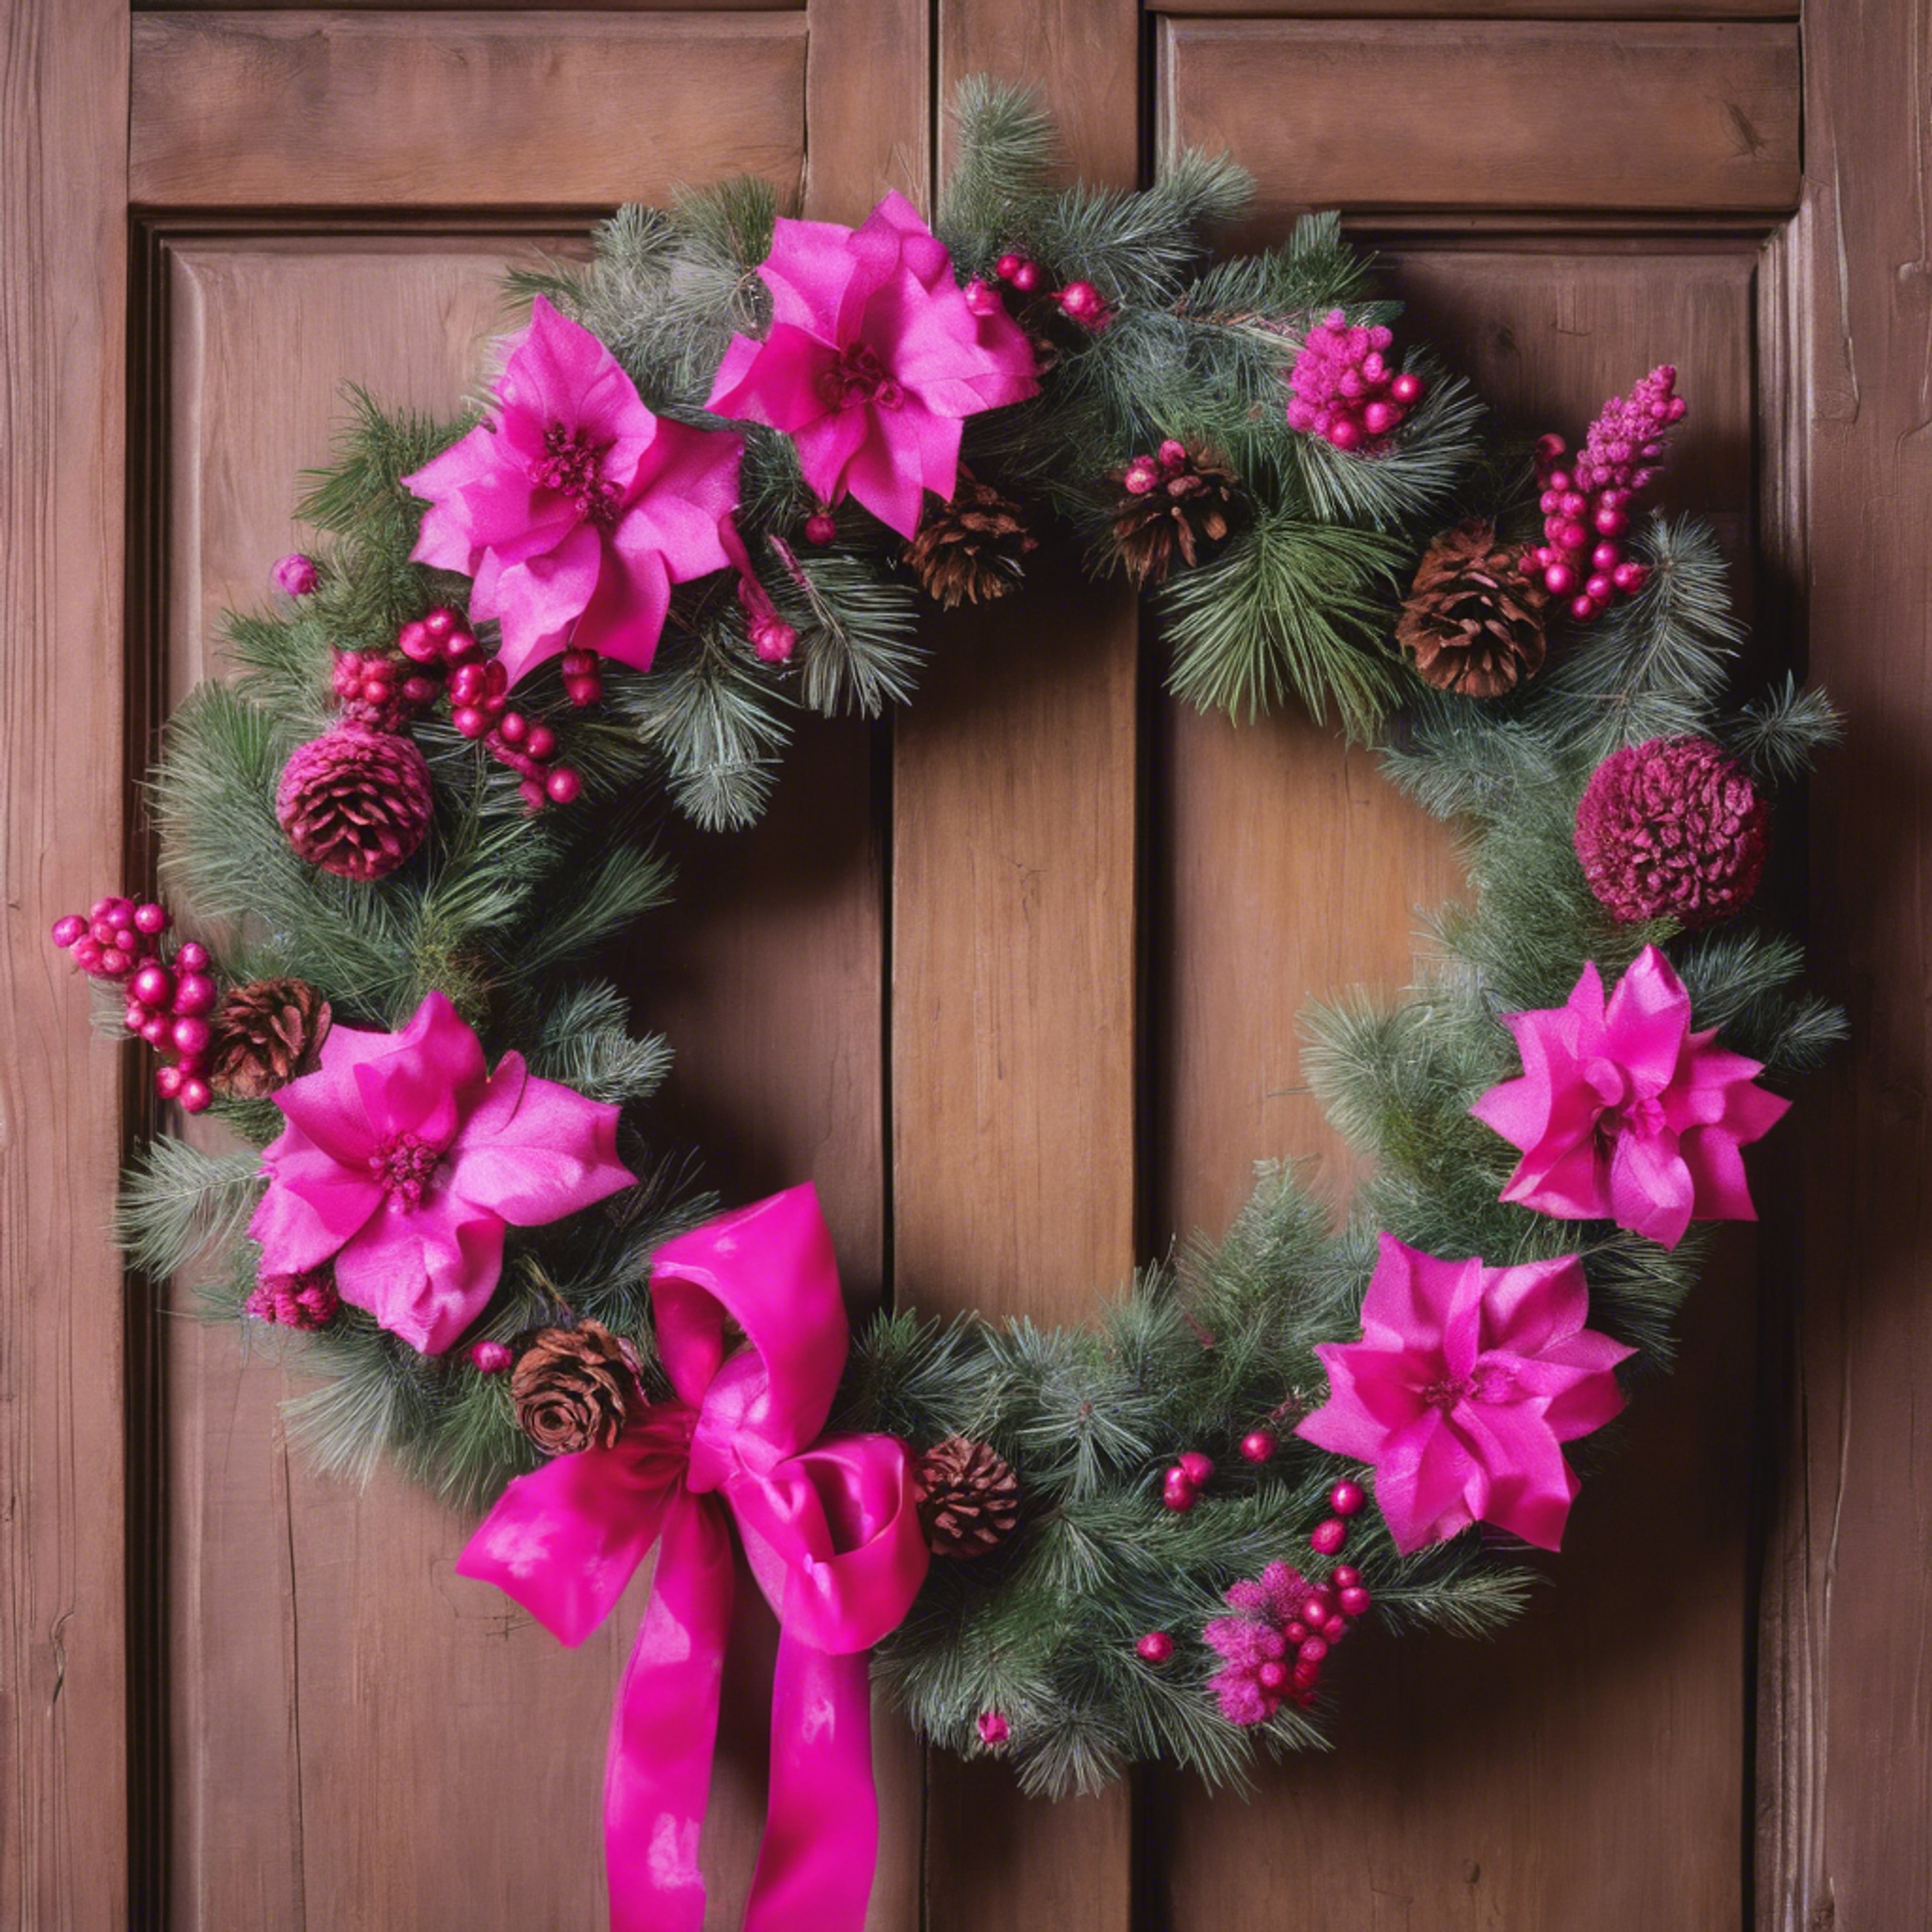 A vibrant pink Christmas wreath hanging on a rustic wooden door. Wallpaper[5e4d8871136e4bada0c9]